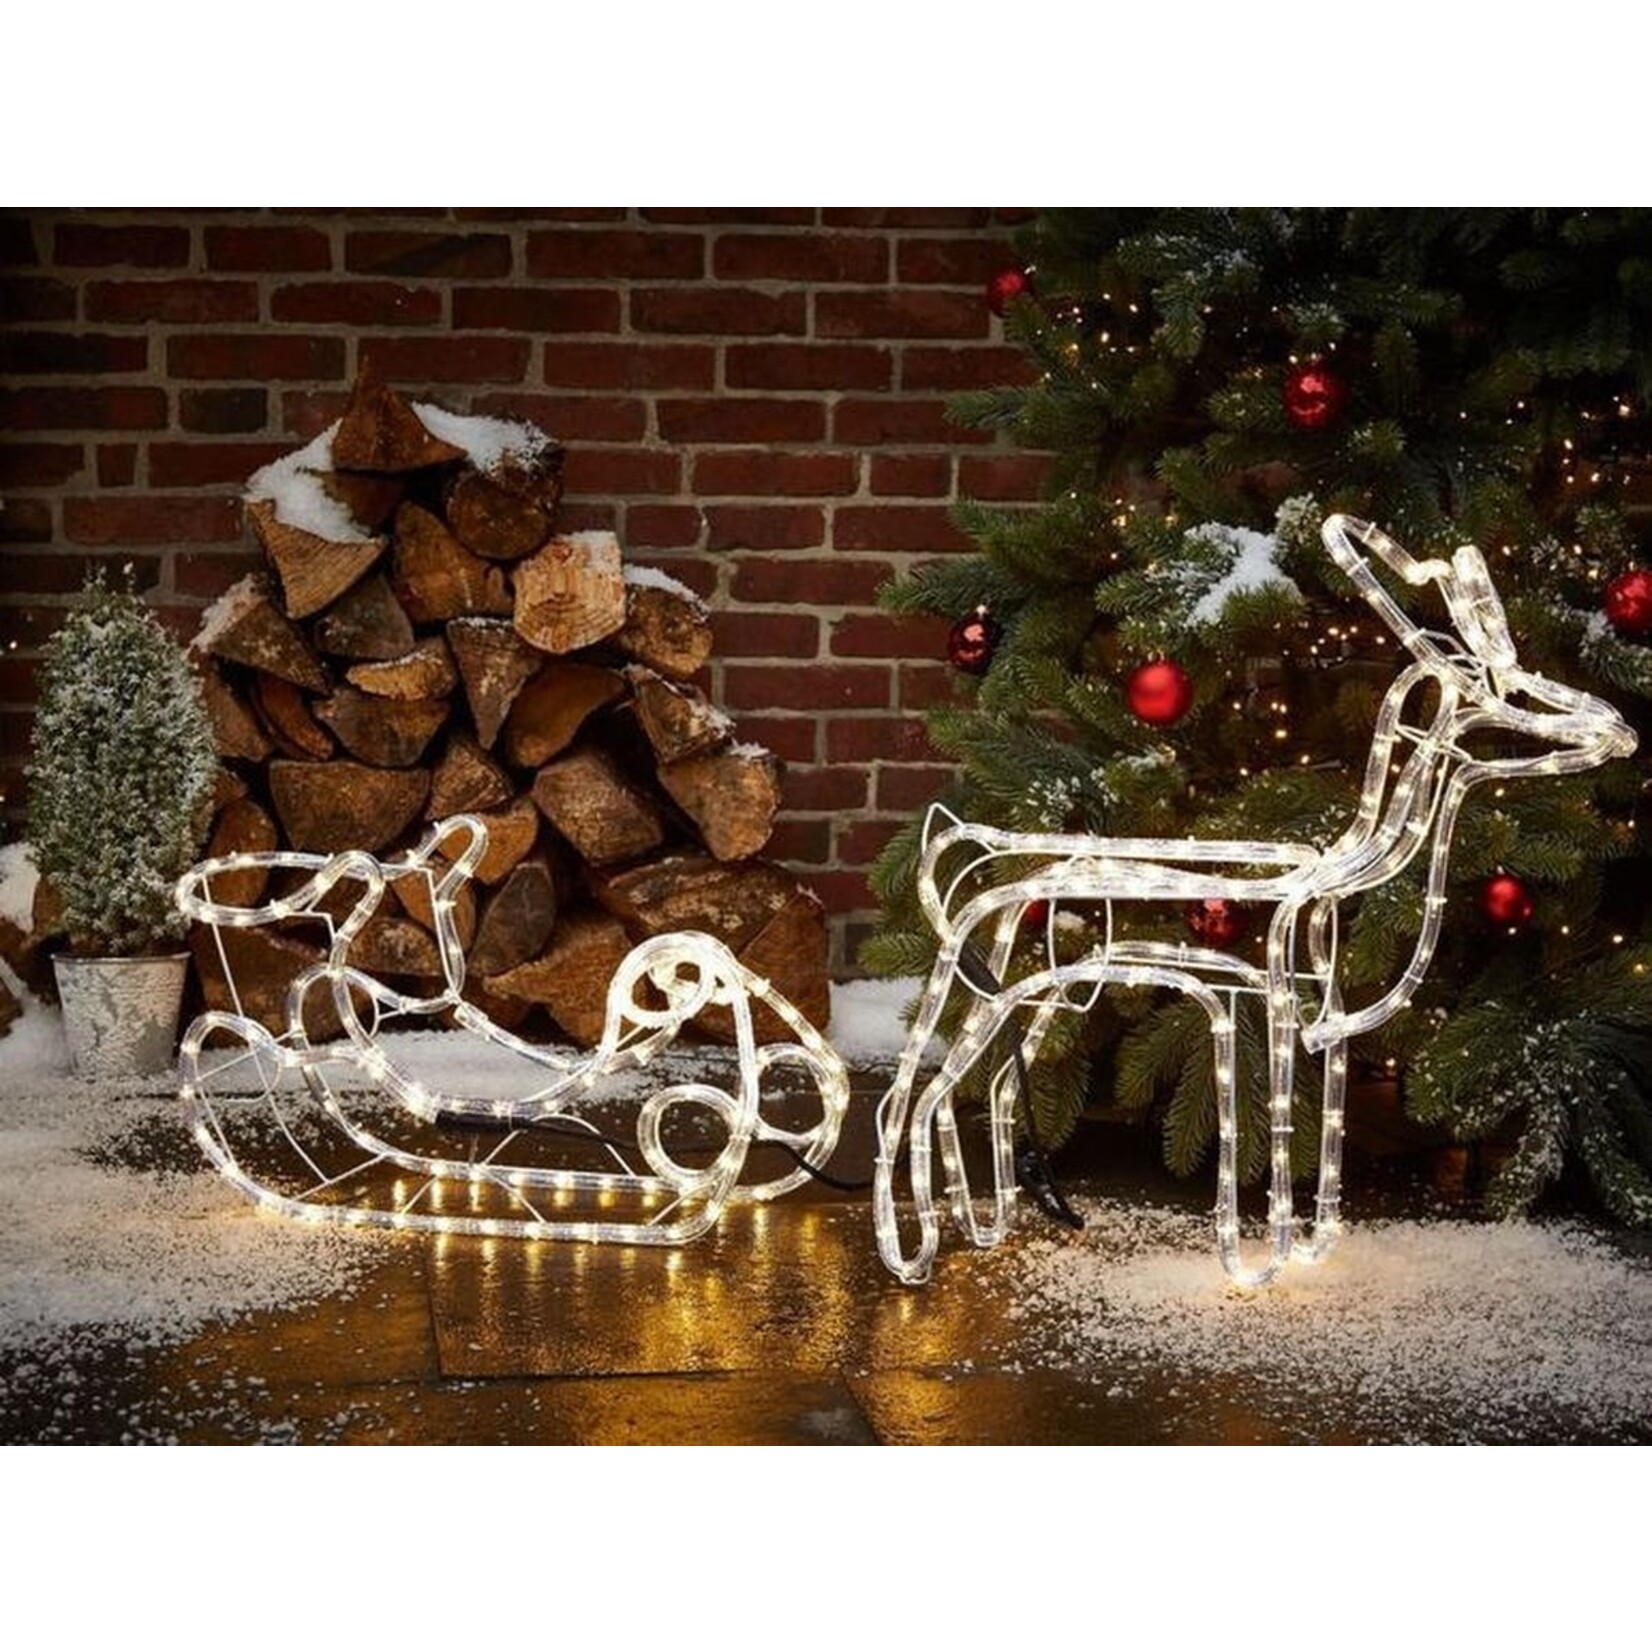 AG Store Kerstverlichting buiten en binnen - Rendier met Slee - 3D figuur - energiezuinig - kerst -spatwaterdicht - met timer - wit warmlicht